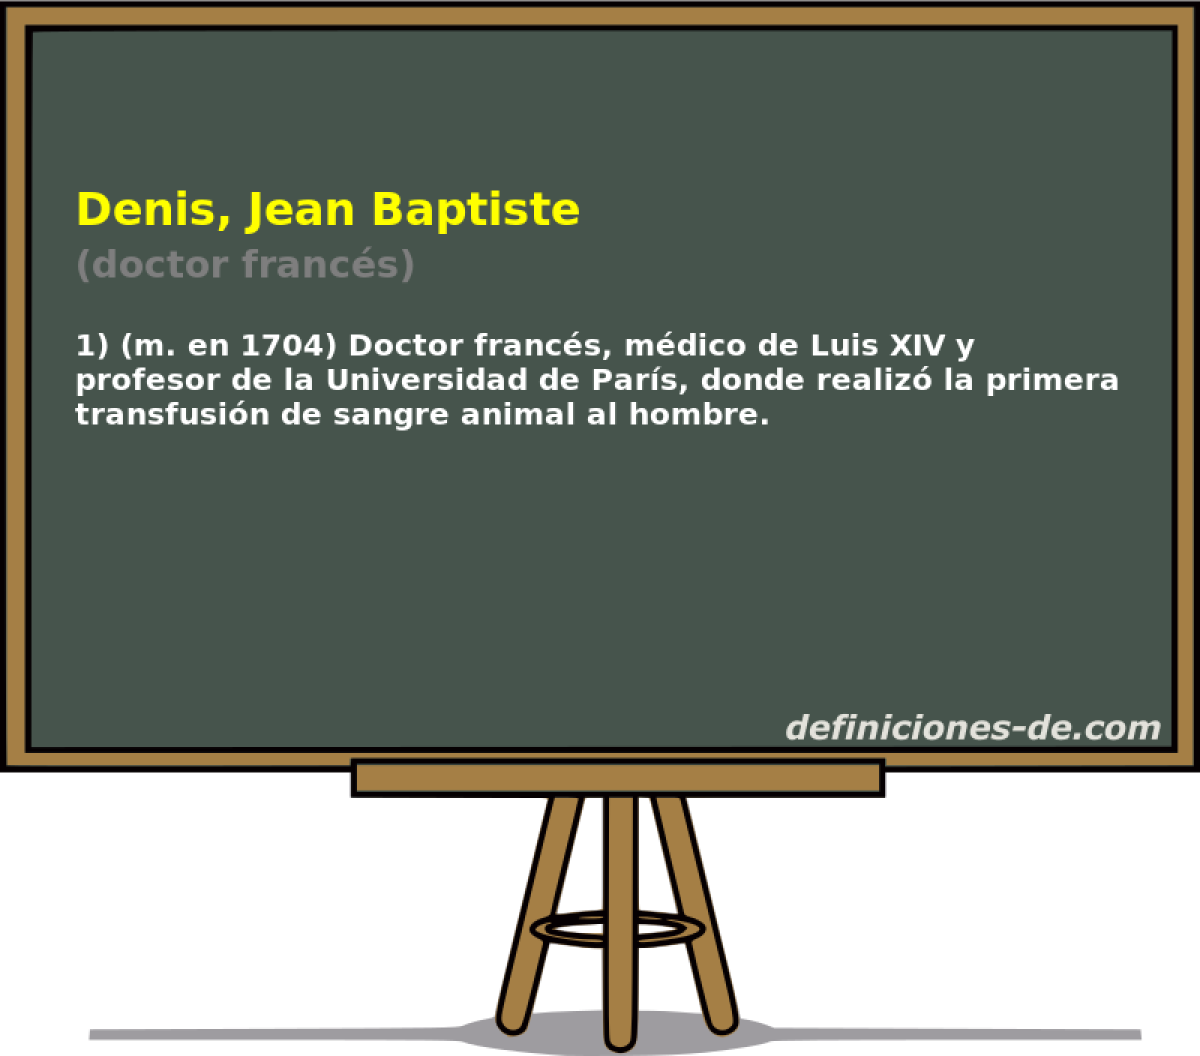 Denis, Jean Baptiste (doctor francs)